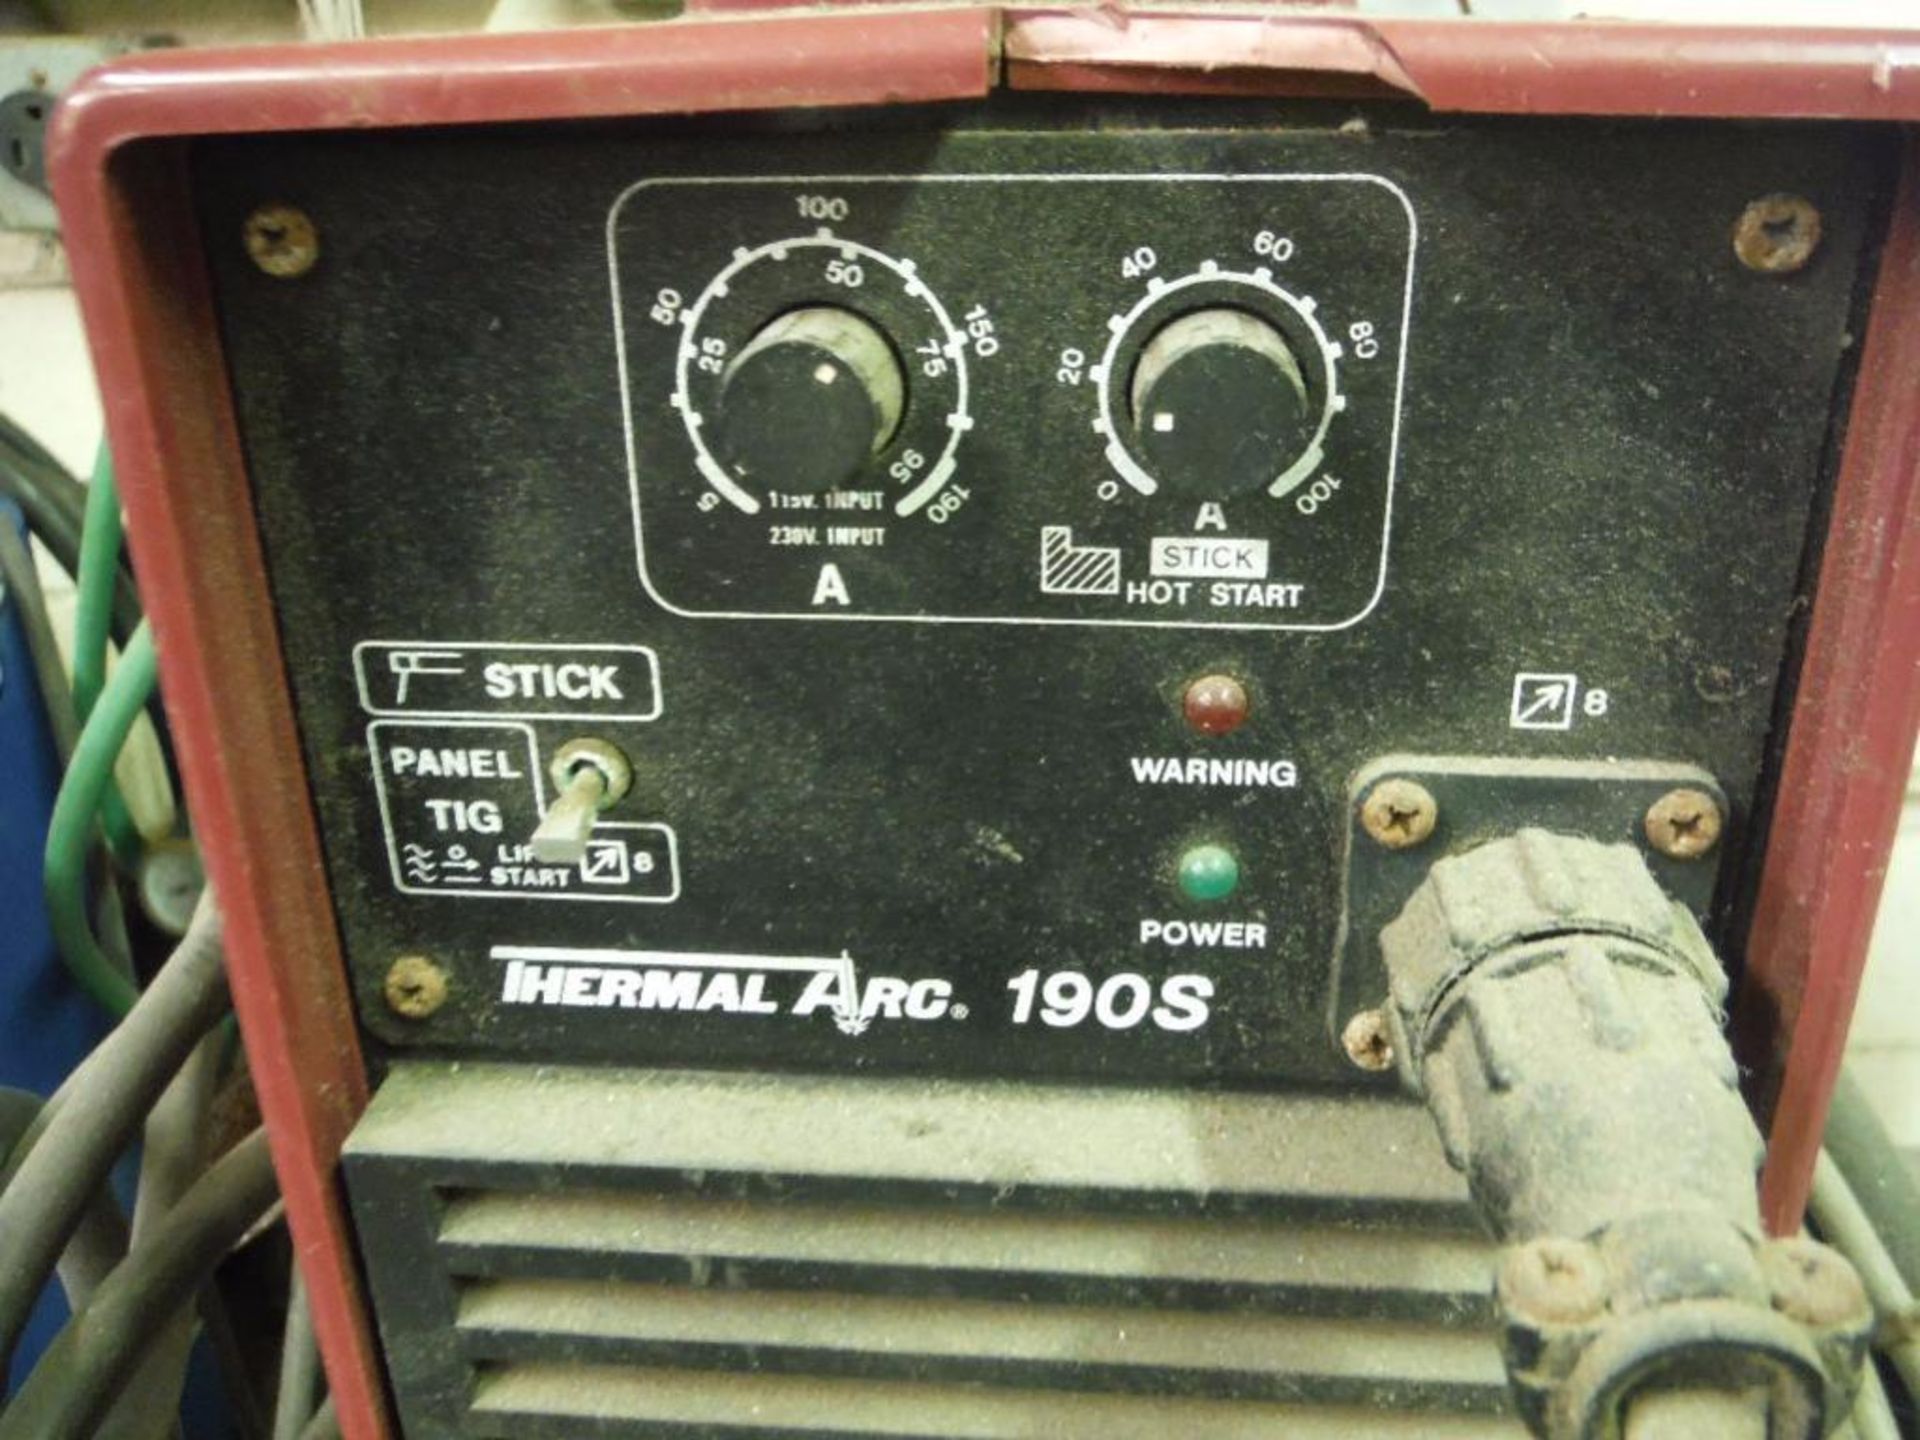 Thermal Arc DC inverter arc welder, Model 190S, 115/208/230 volt, on SS cart ** Rigging Fee: $25 ** - Image 2 of 4